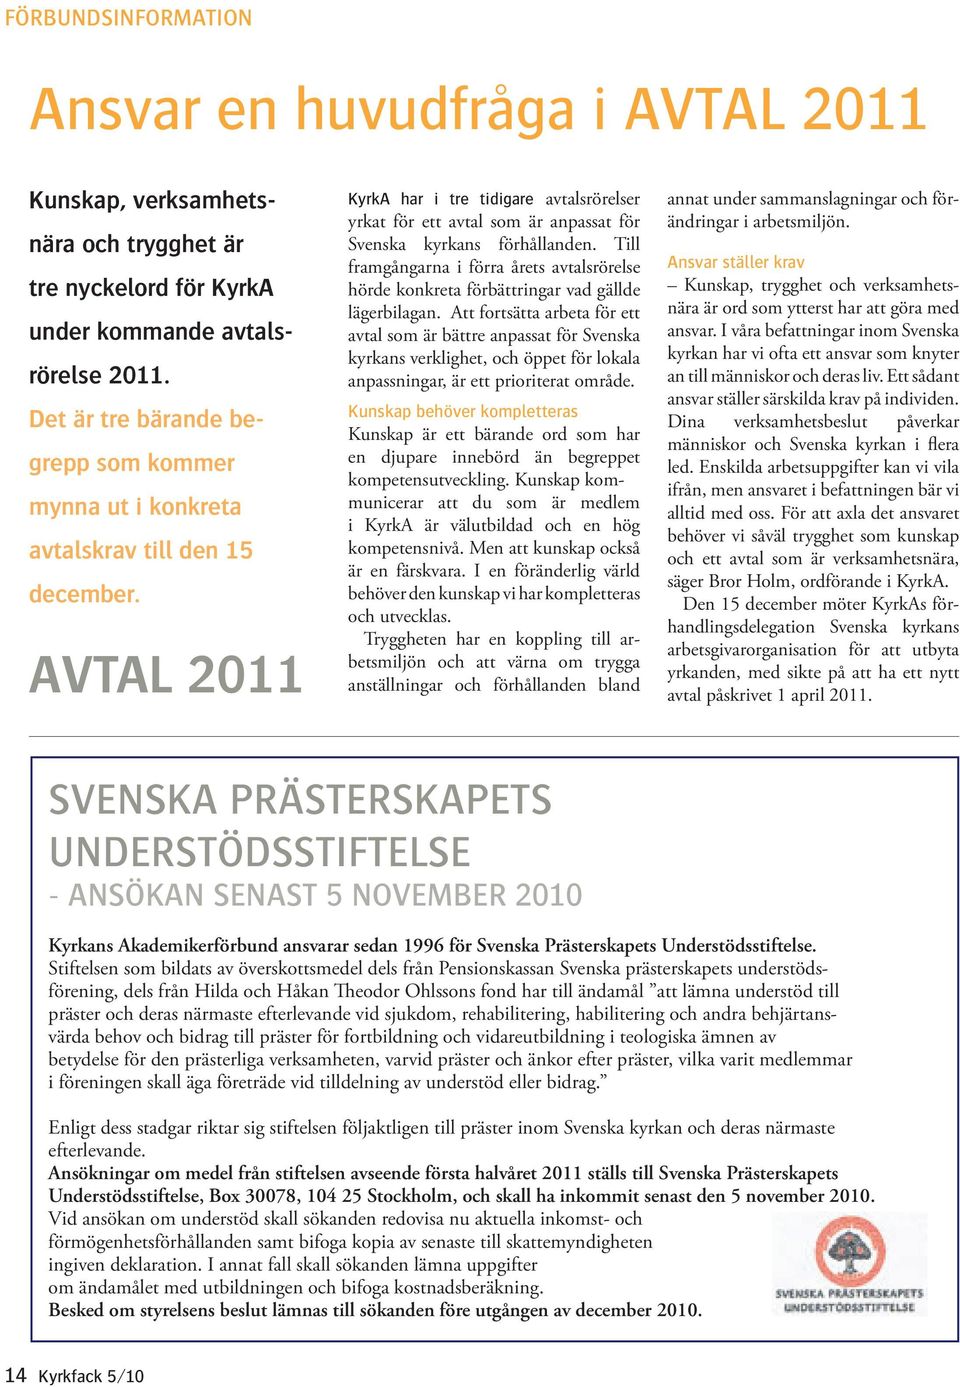 AVTAL 2011 KyrkA har i tre tidigare avtalsrörelser yrkat för ett avtal som är anpassat för Svenska kyrkans förhållanden.